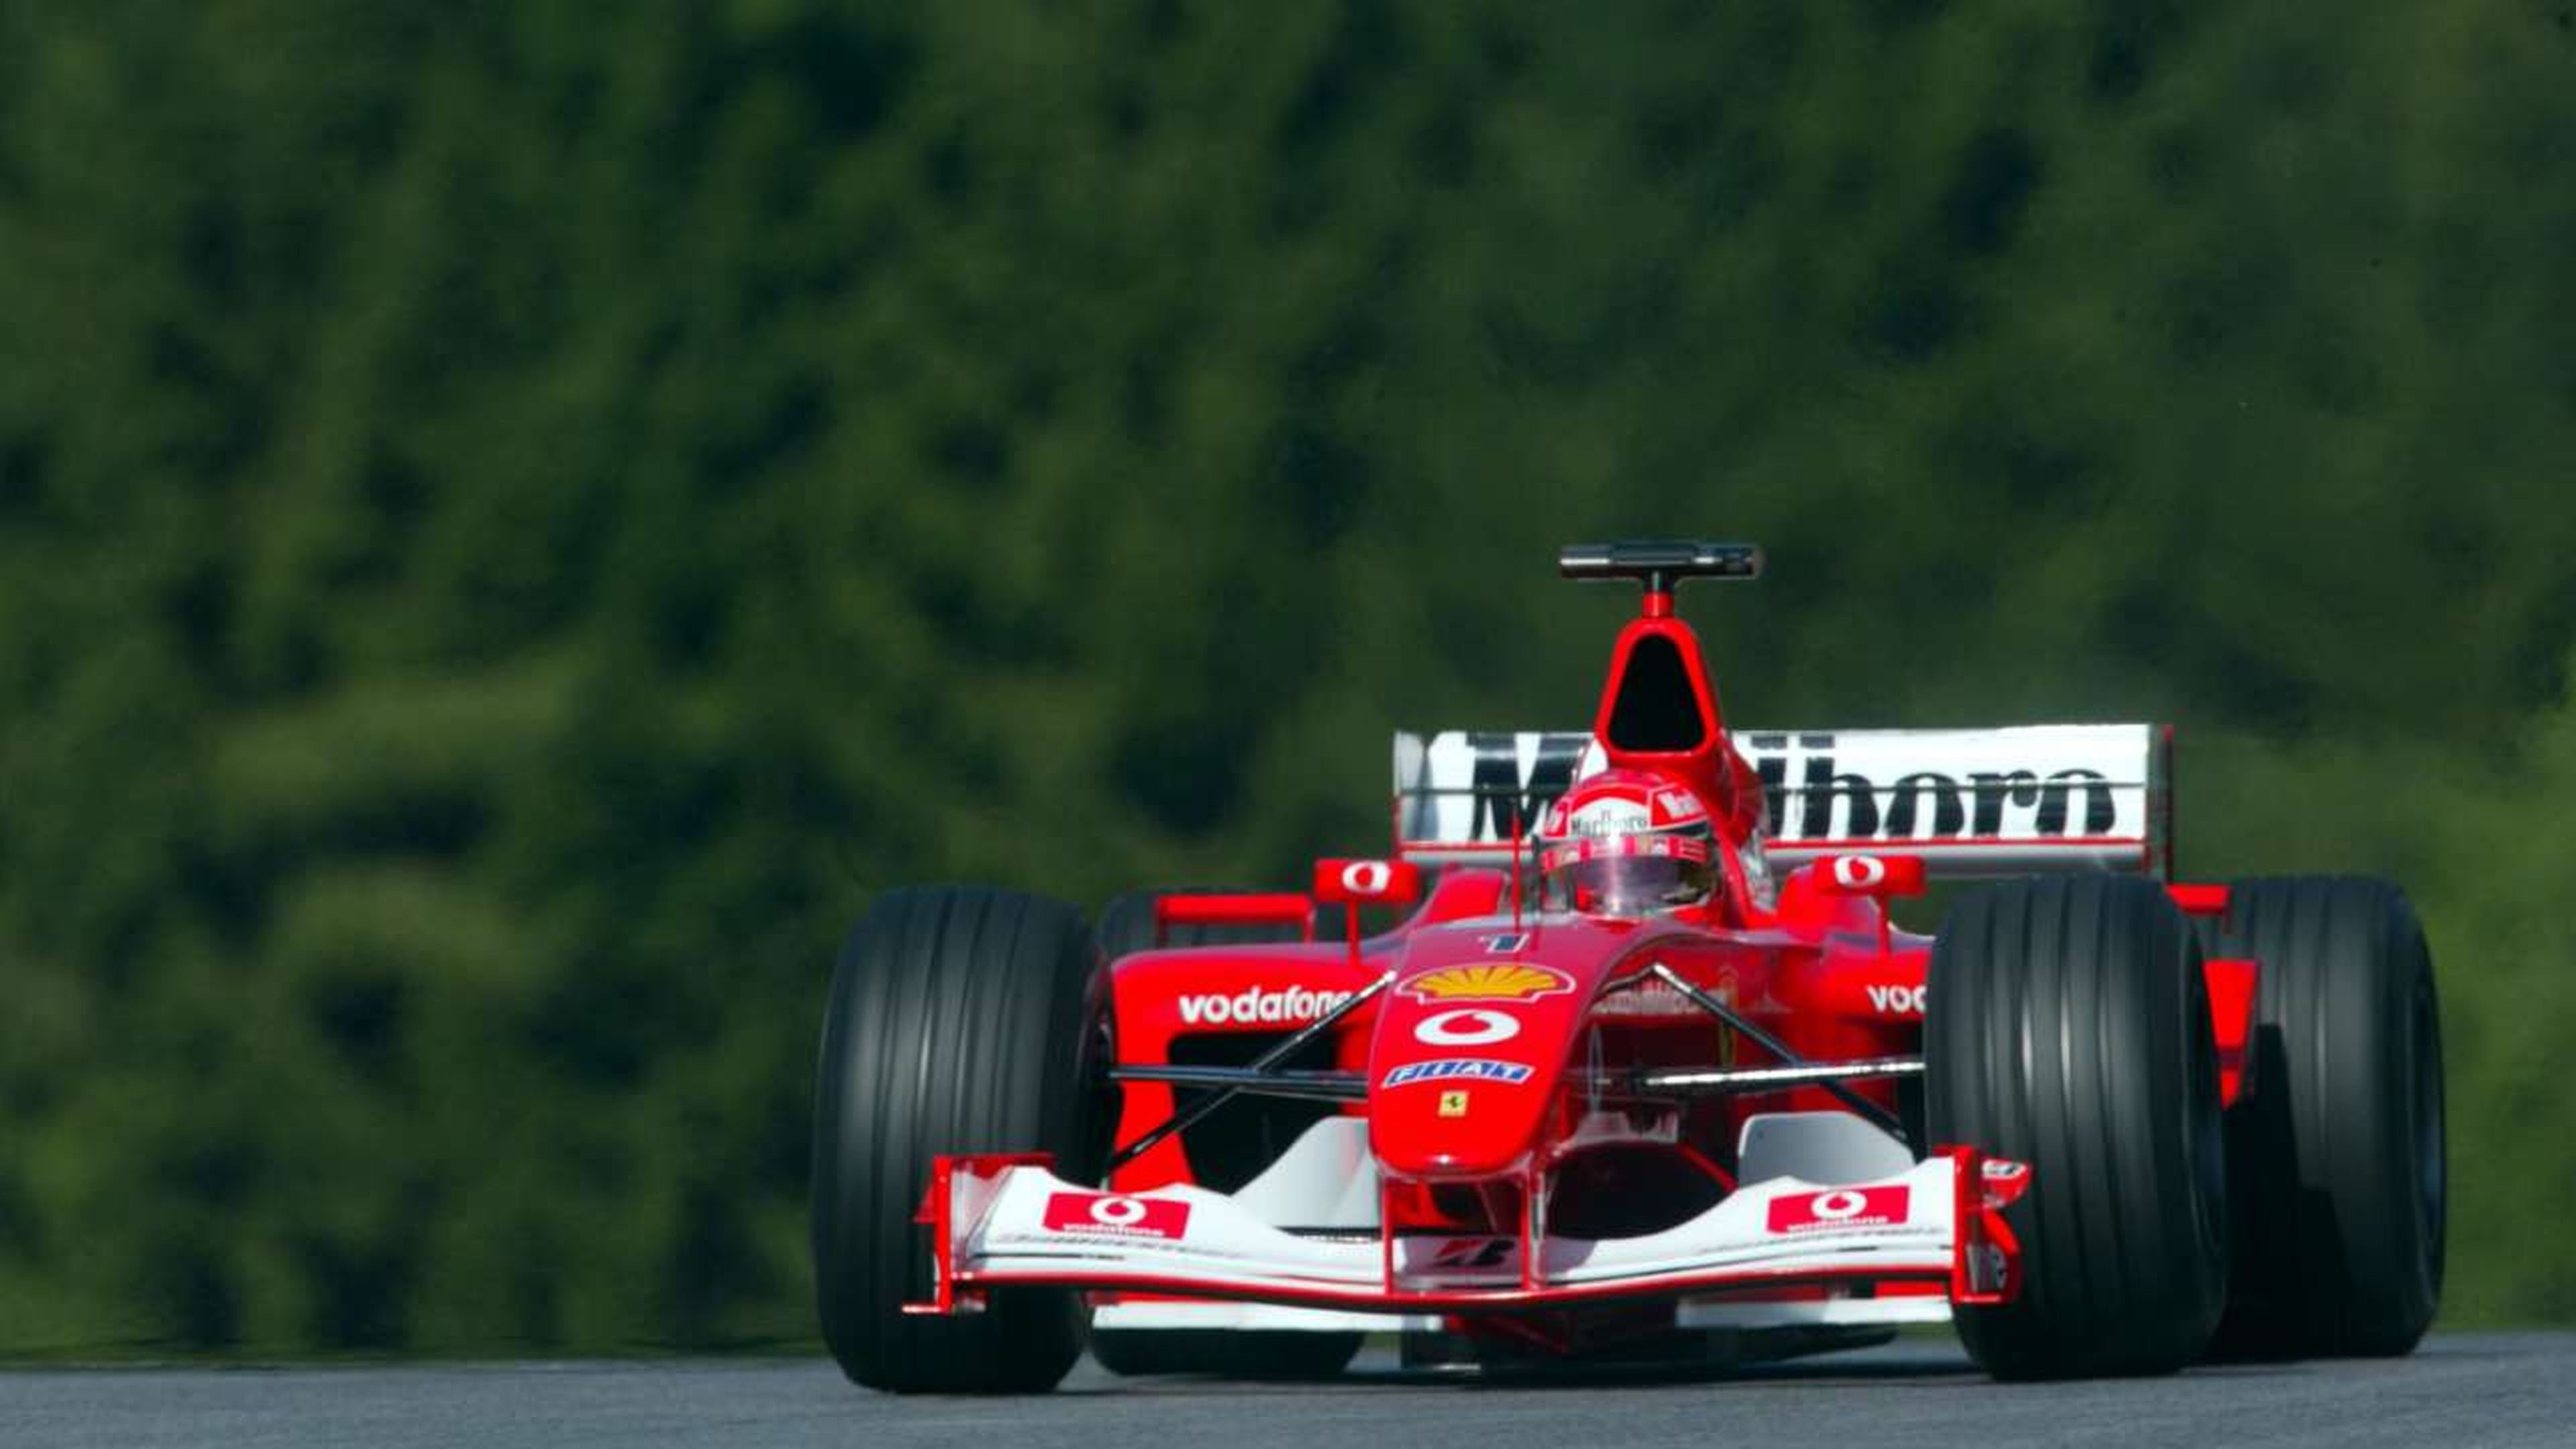 GP Austria F1 2002 Schumacher